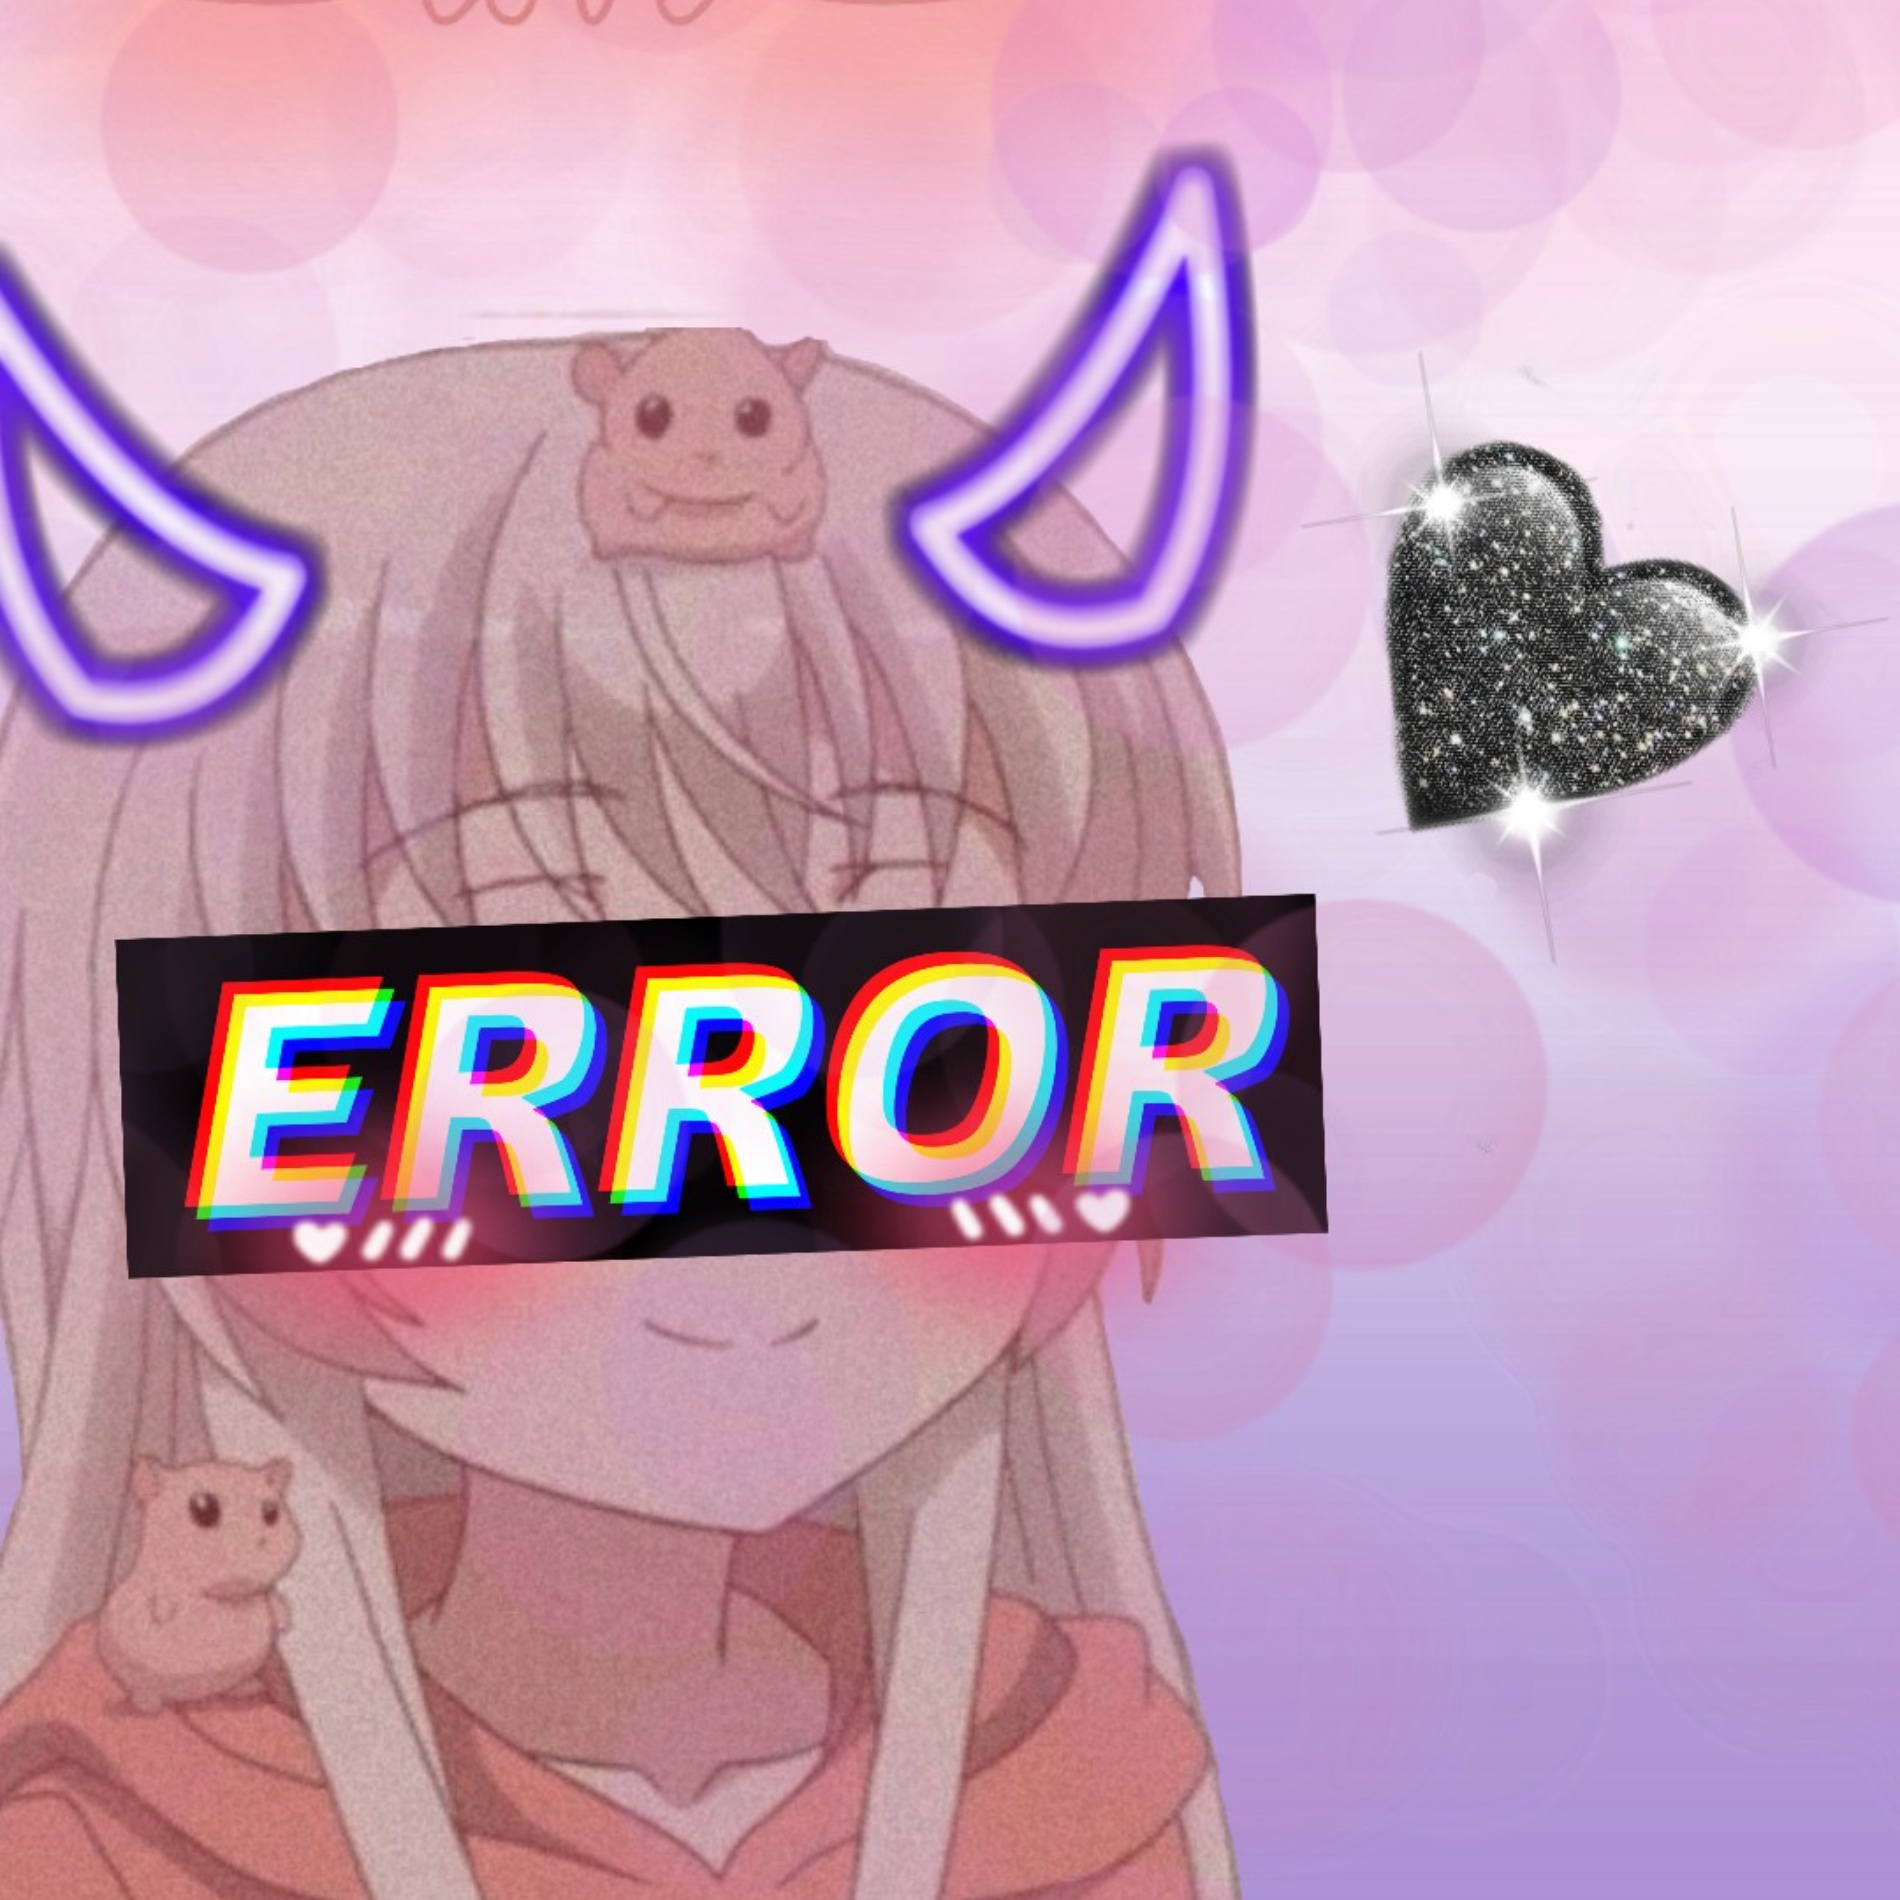 Error Anime Girl Pfp for twitter